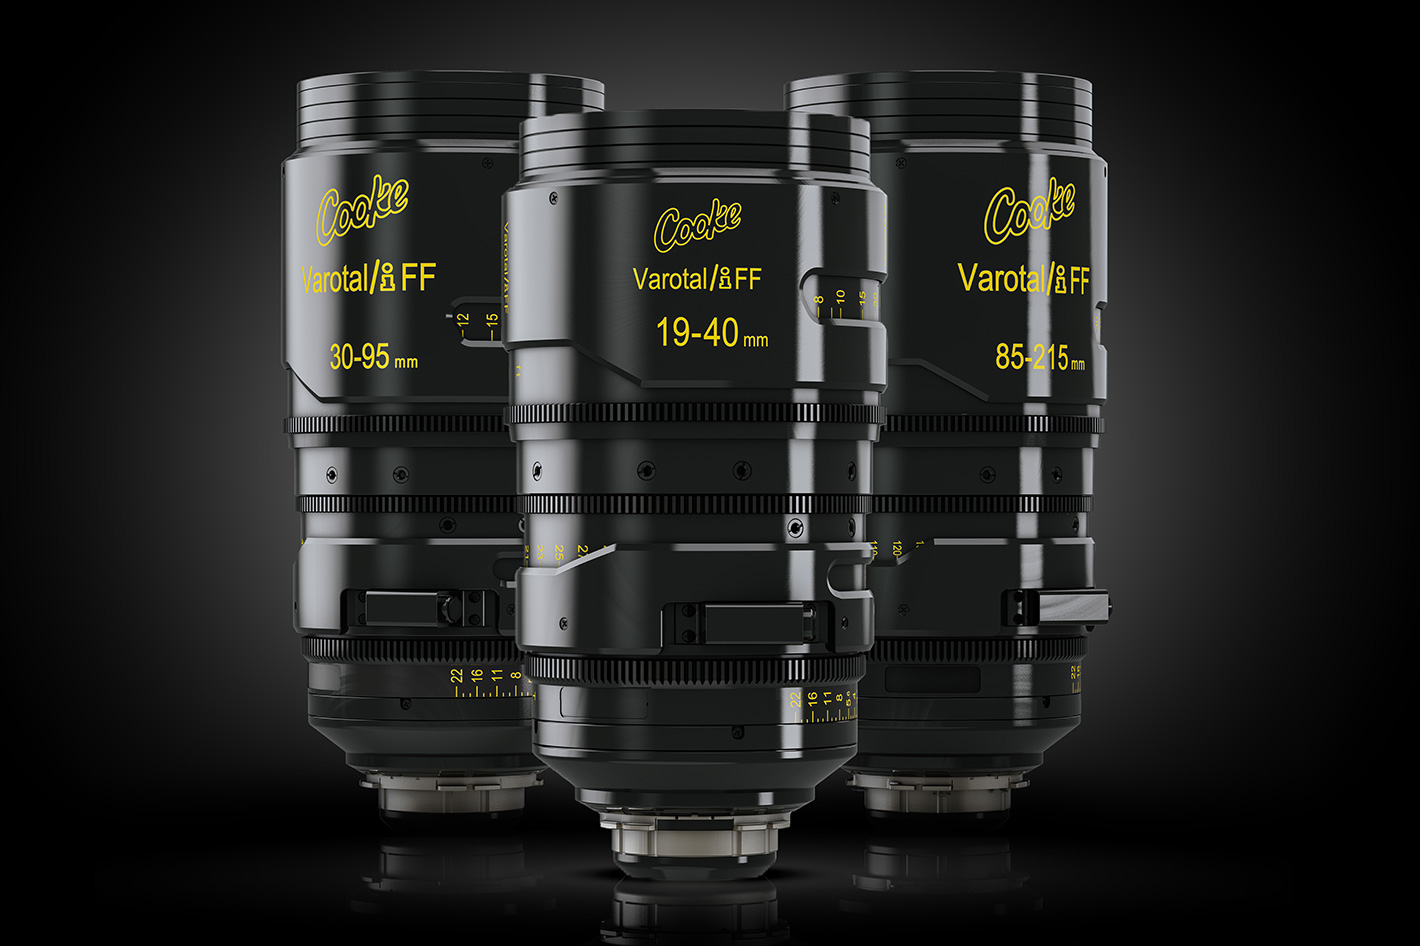 Cooke Optics: Varotal/i FF zoom range gets a new 19-40mm lens